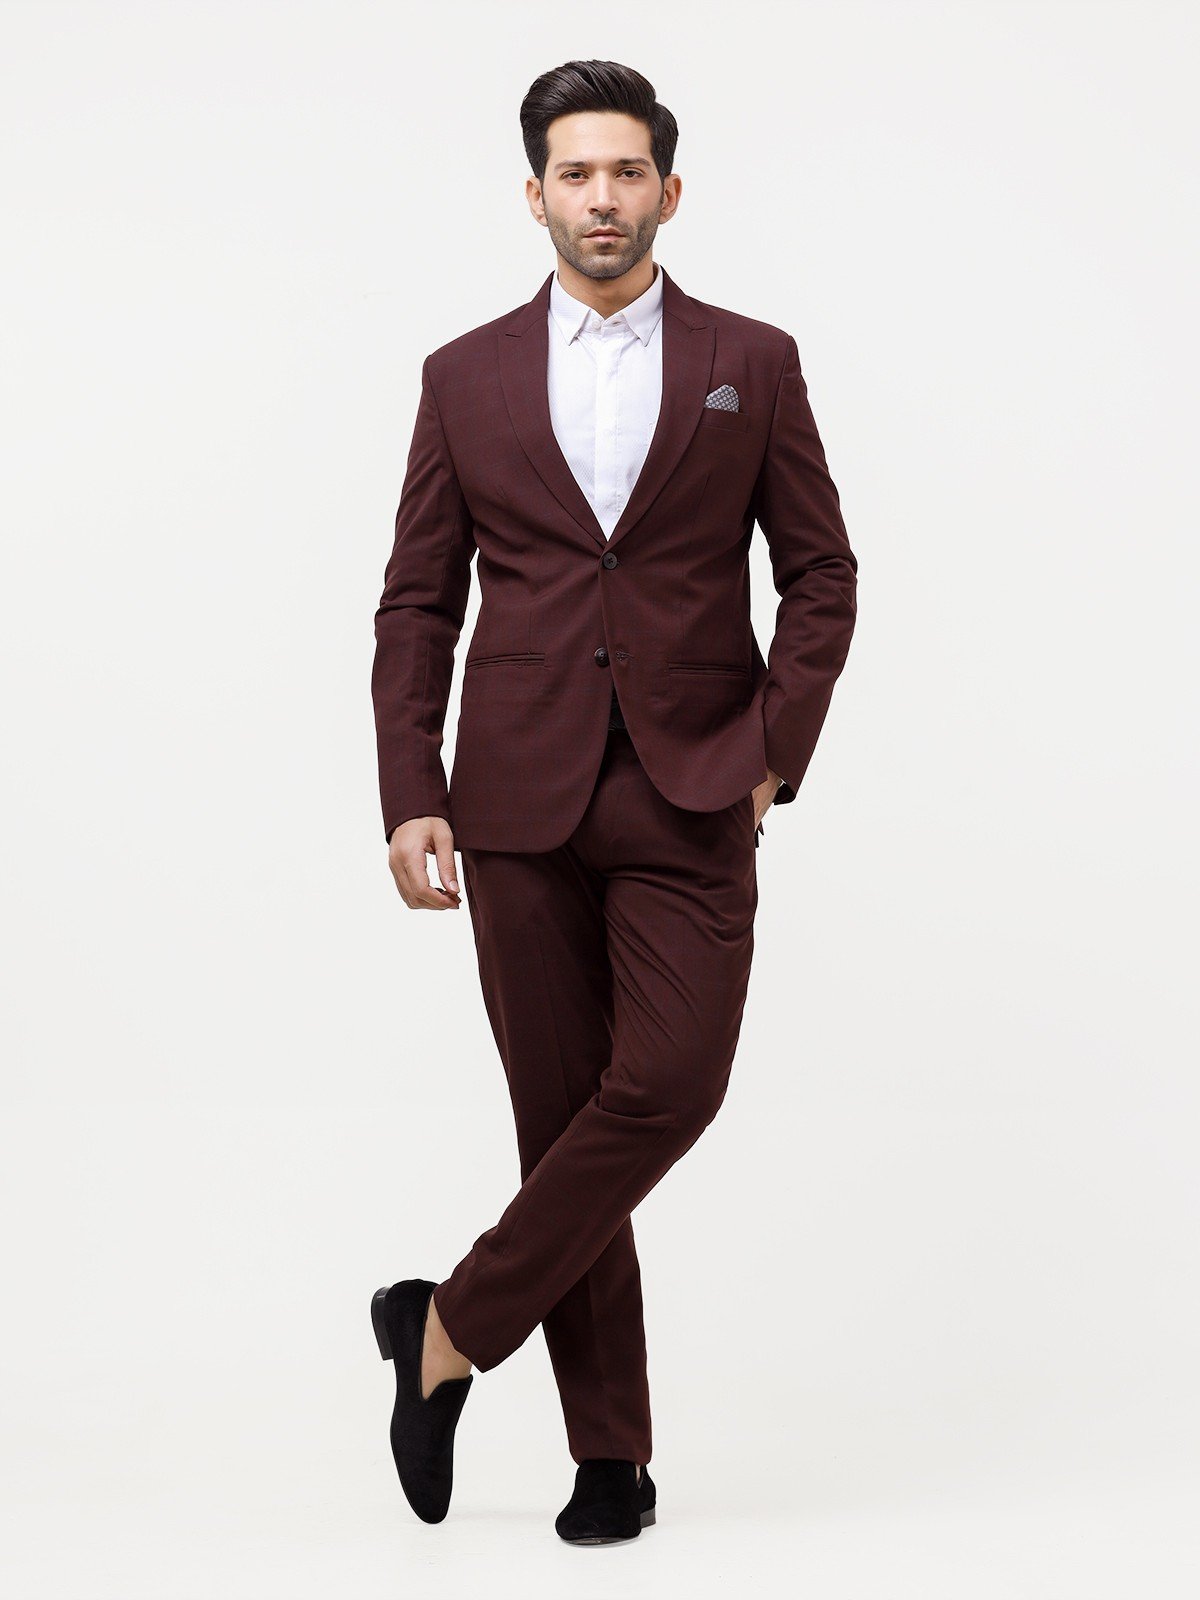 Coat Pant For Men - Buy Men Coat Pant Online